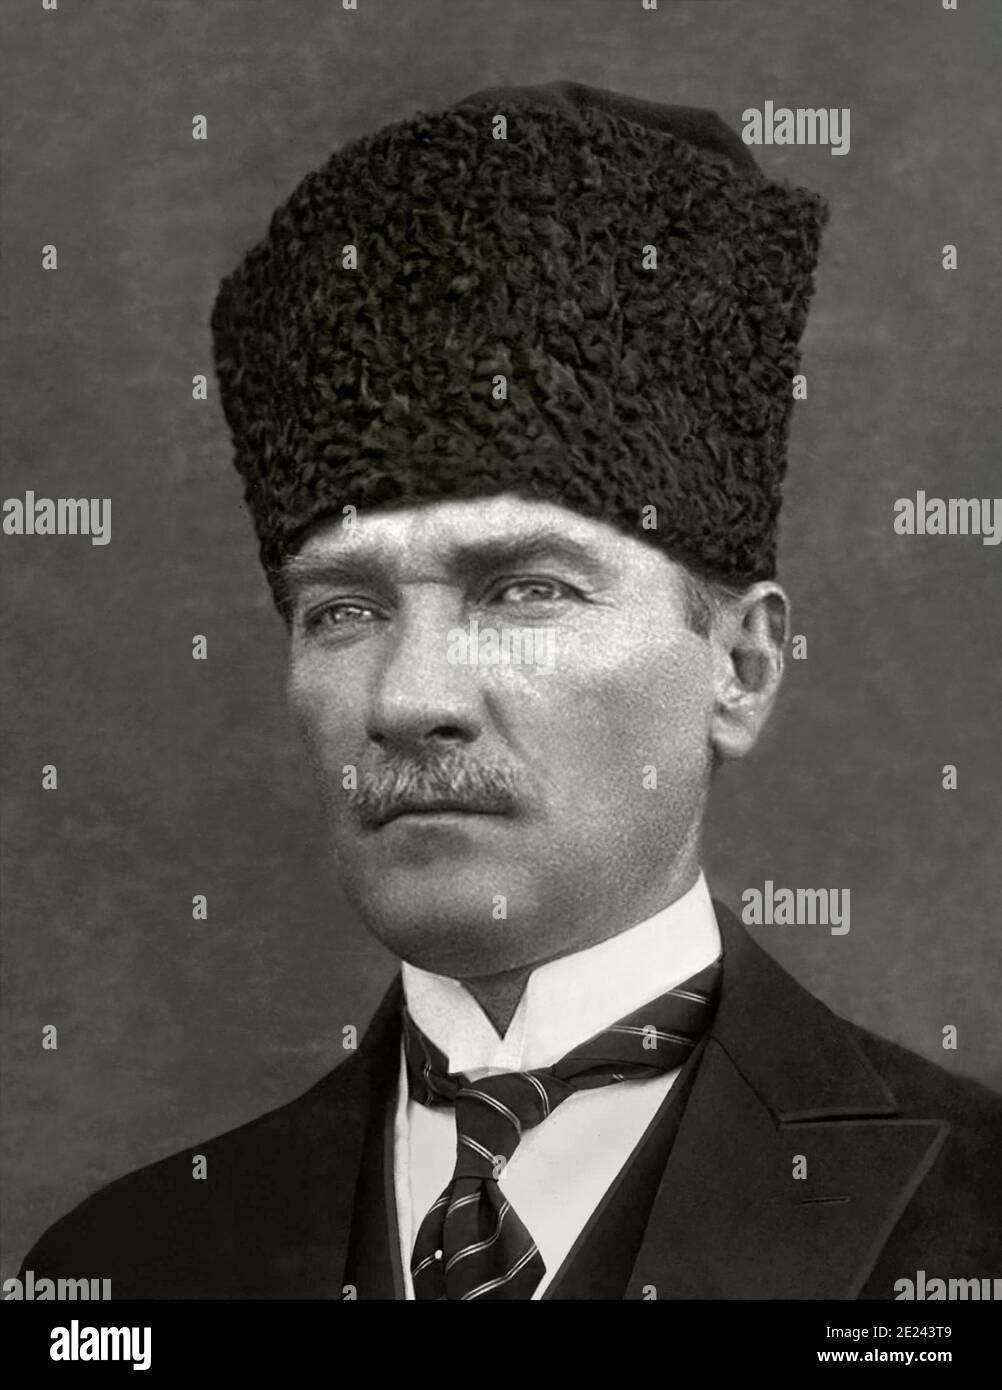 Kemal Atatürk  (until 1934: Mustafa Kemal Pasha; after 1935: Kamâl Atatürk; 1881 – 1938), commonly referred to as Mustafa Kemal Atatürk, was a Turkish Stock Photo